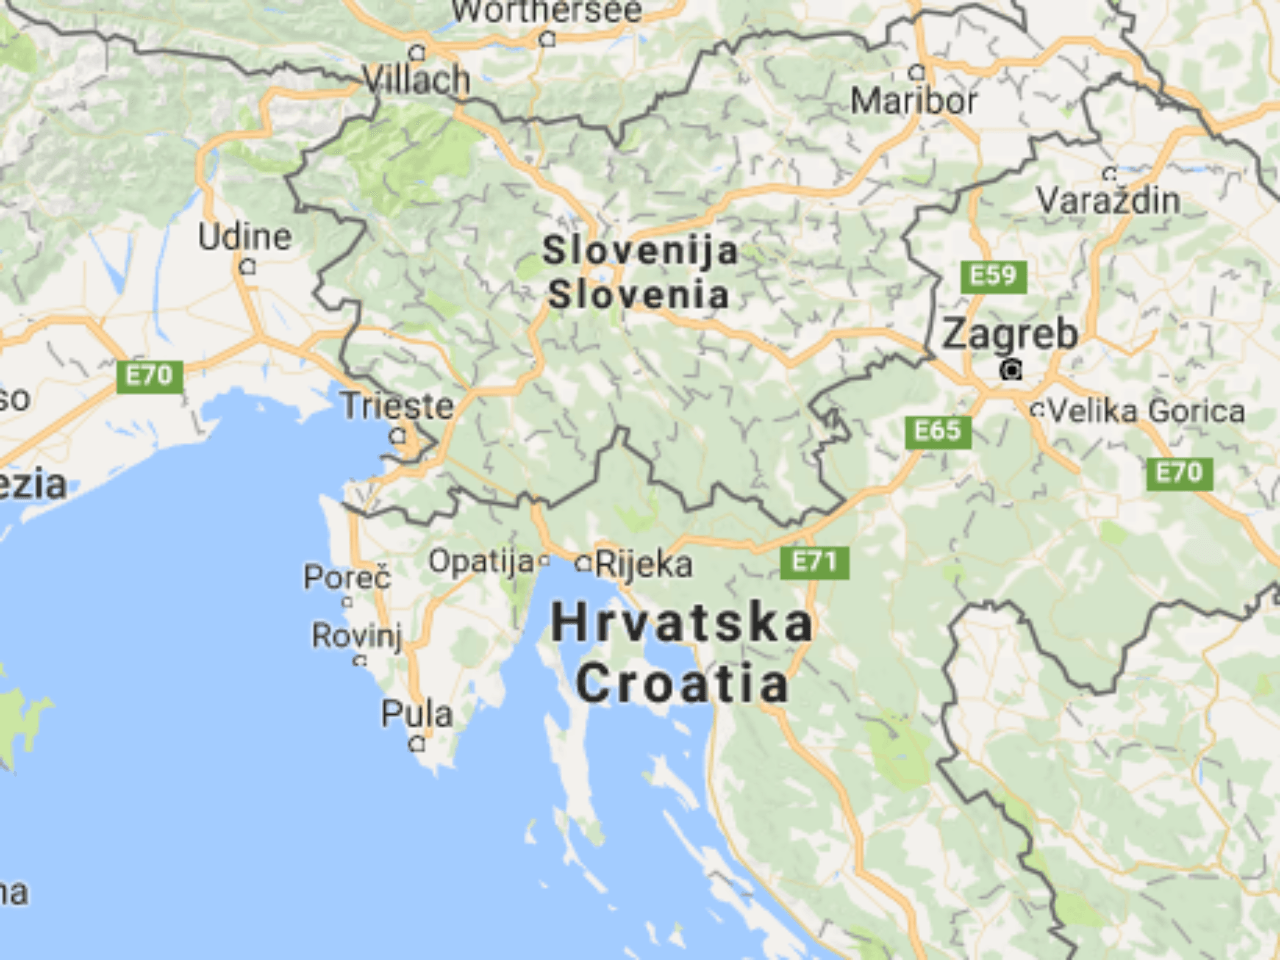 Medzinárodný arbitrážny súd včera udelil Slovinsku priamy prístup k medzinárodným vodám Jadranského mora.